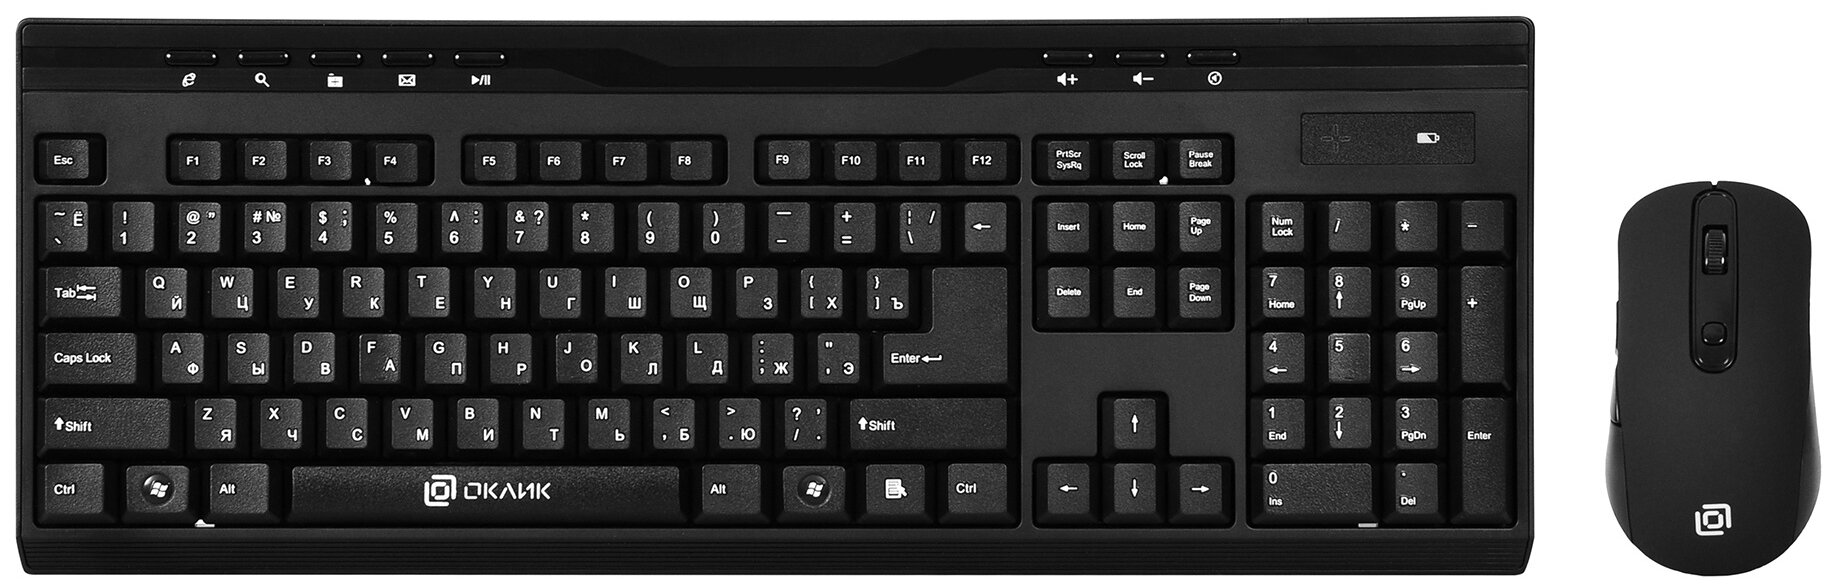 Комплект клавиатура + мышь OKLICK 280 M, black